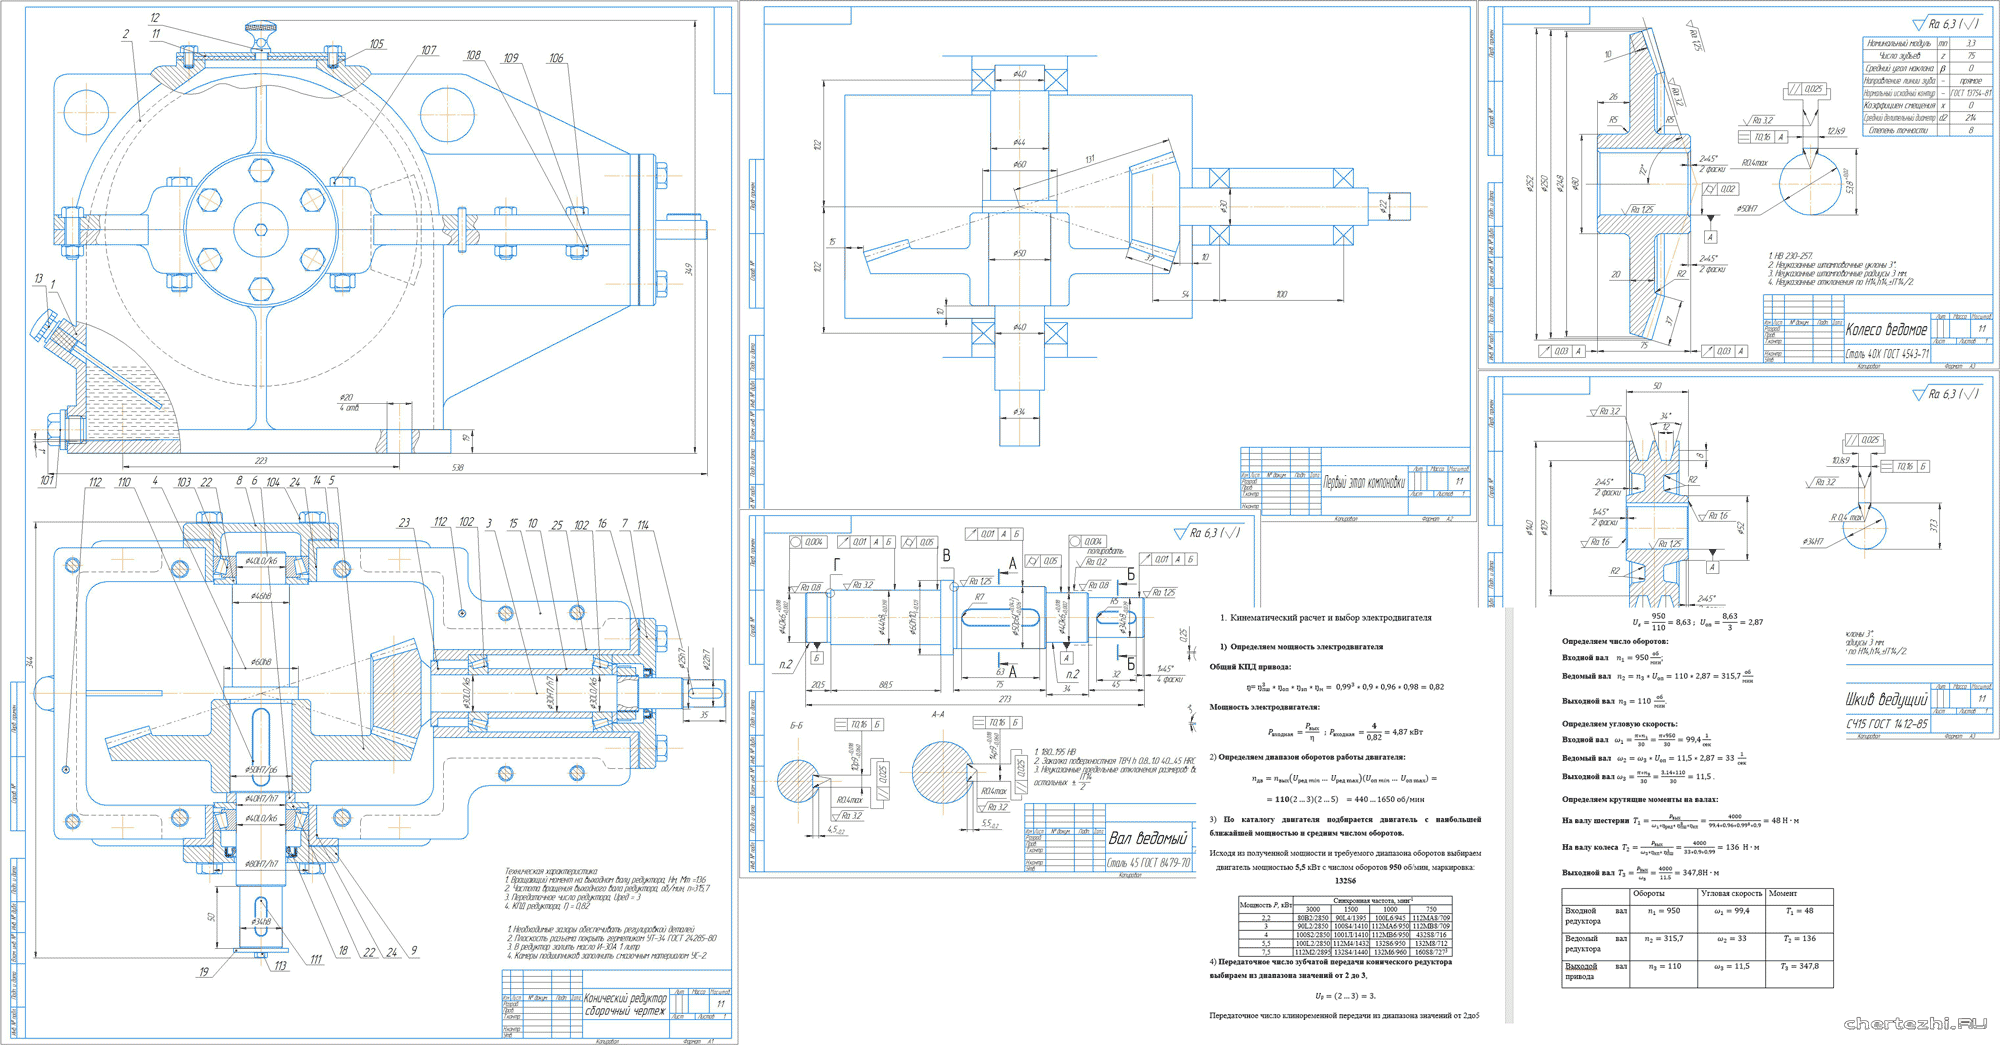 Курсовой проект - Разработка привода цехового подъемника в составе одноступенчатого конического редуктора с прямыми зубьями и клиноременной передачей